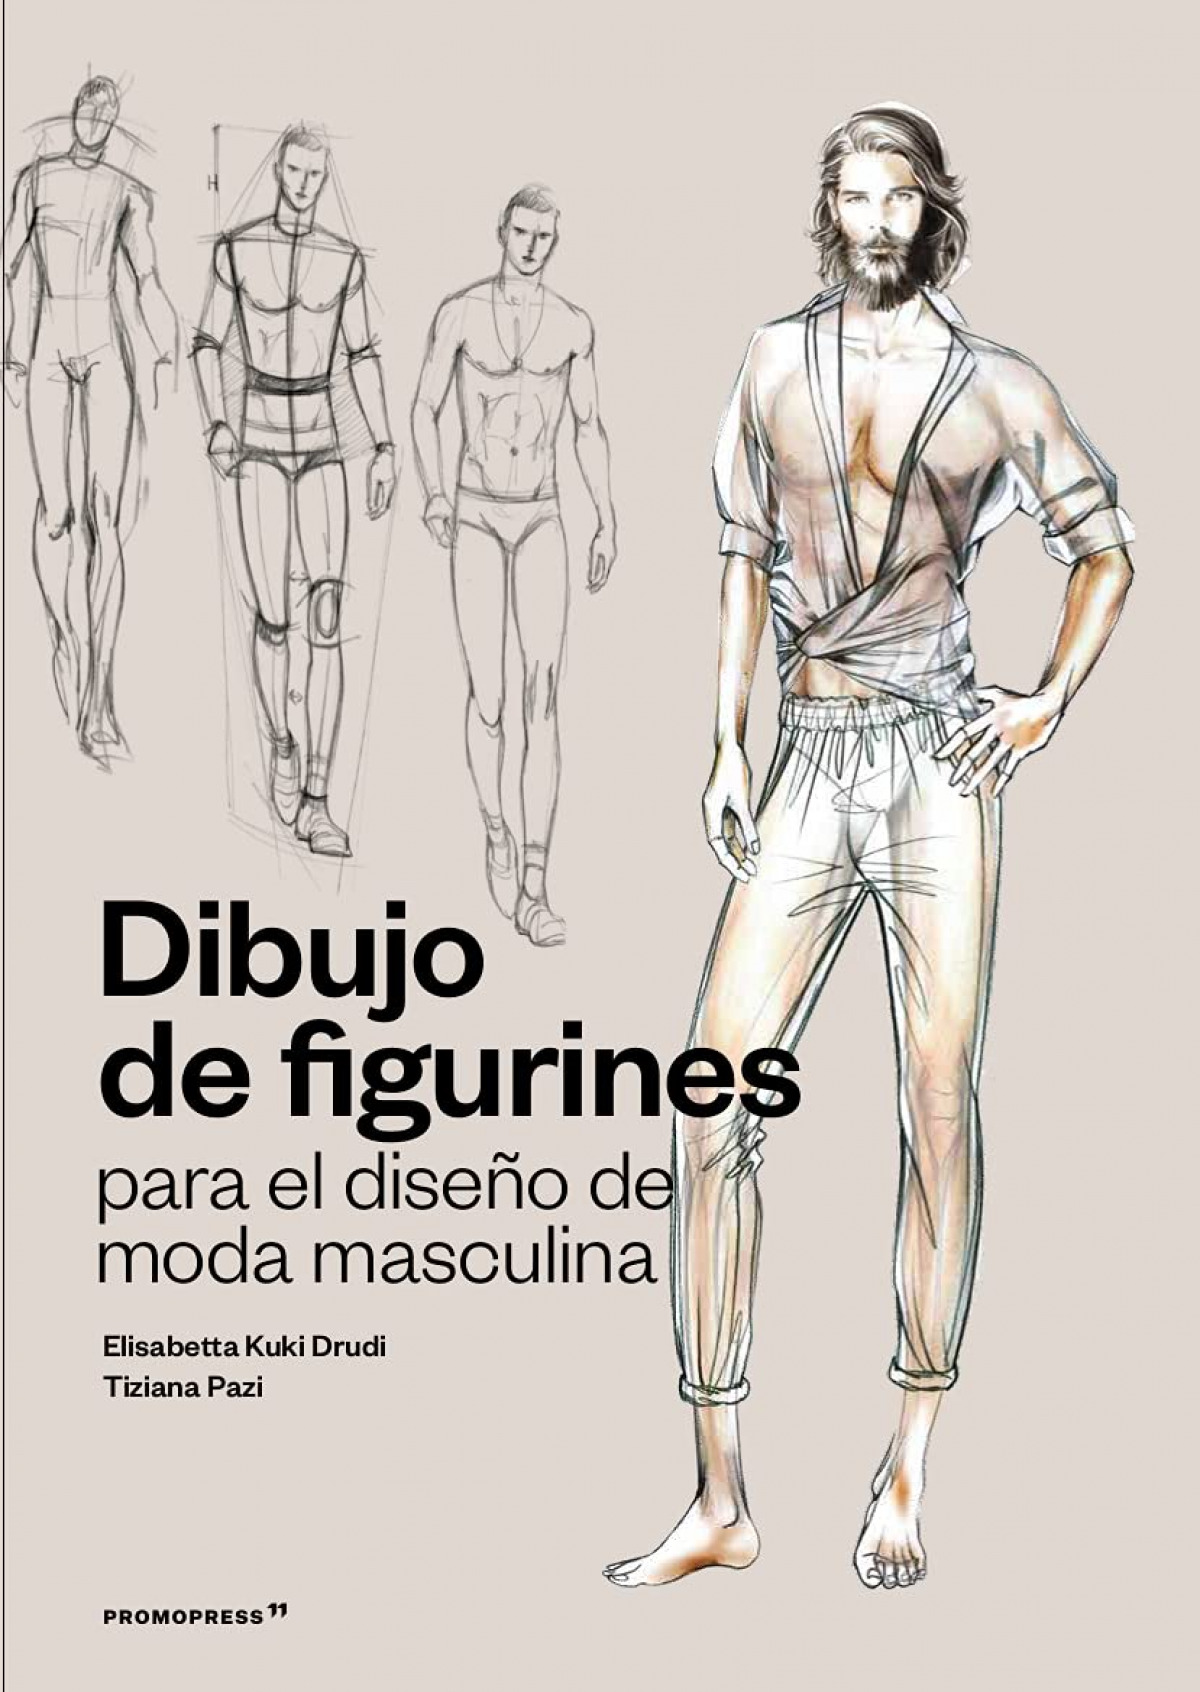 Dibujo de figurines para el diseño de moda masculi